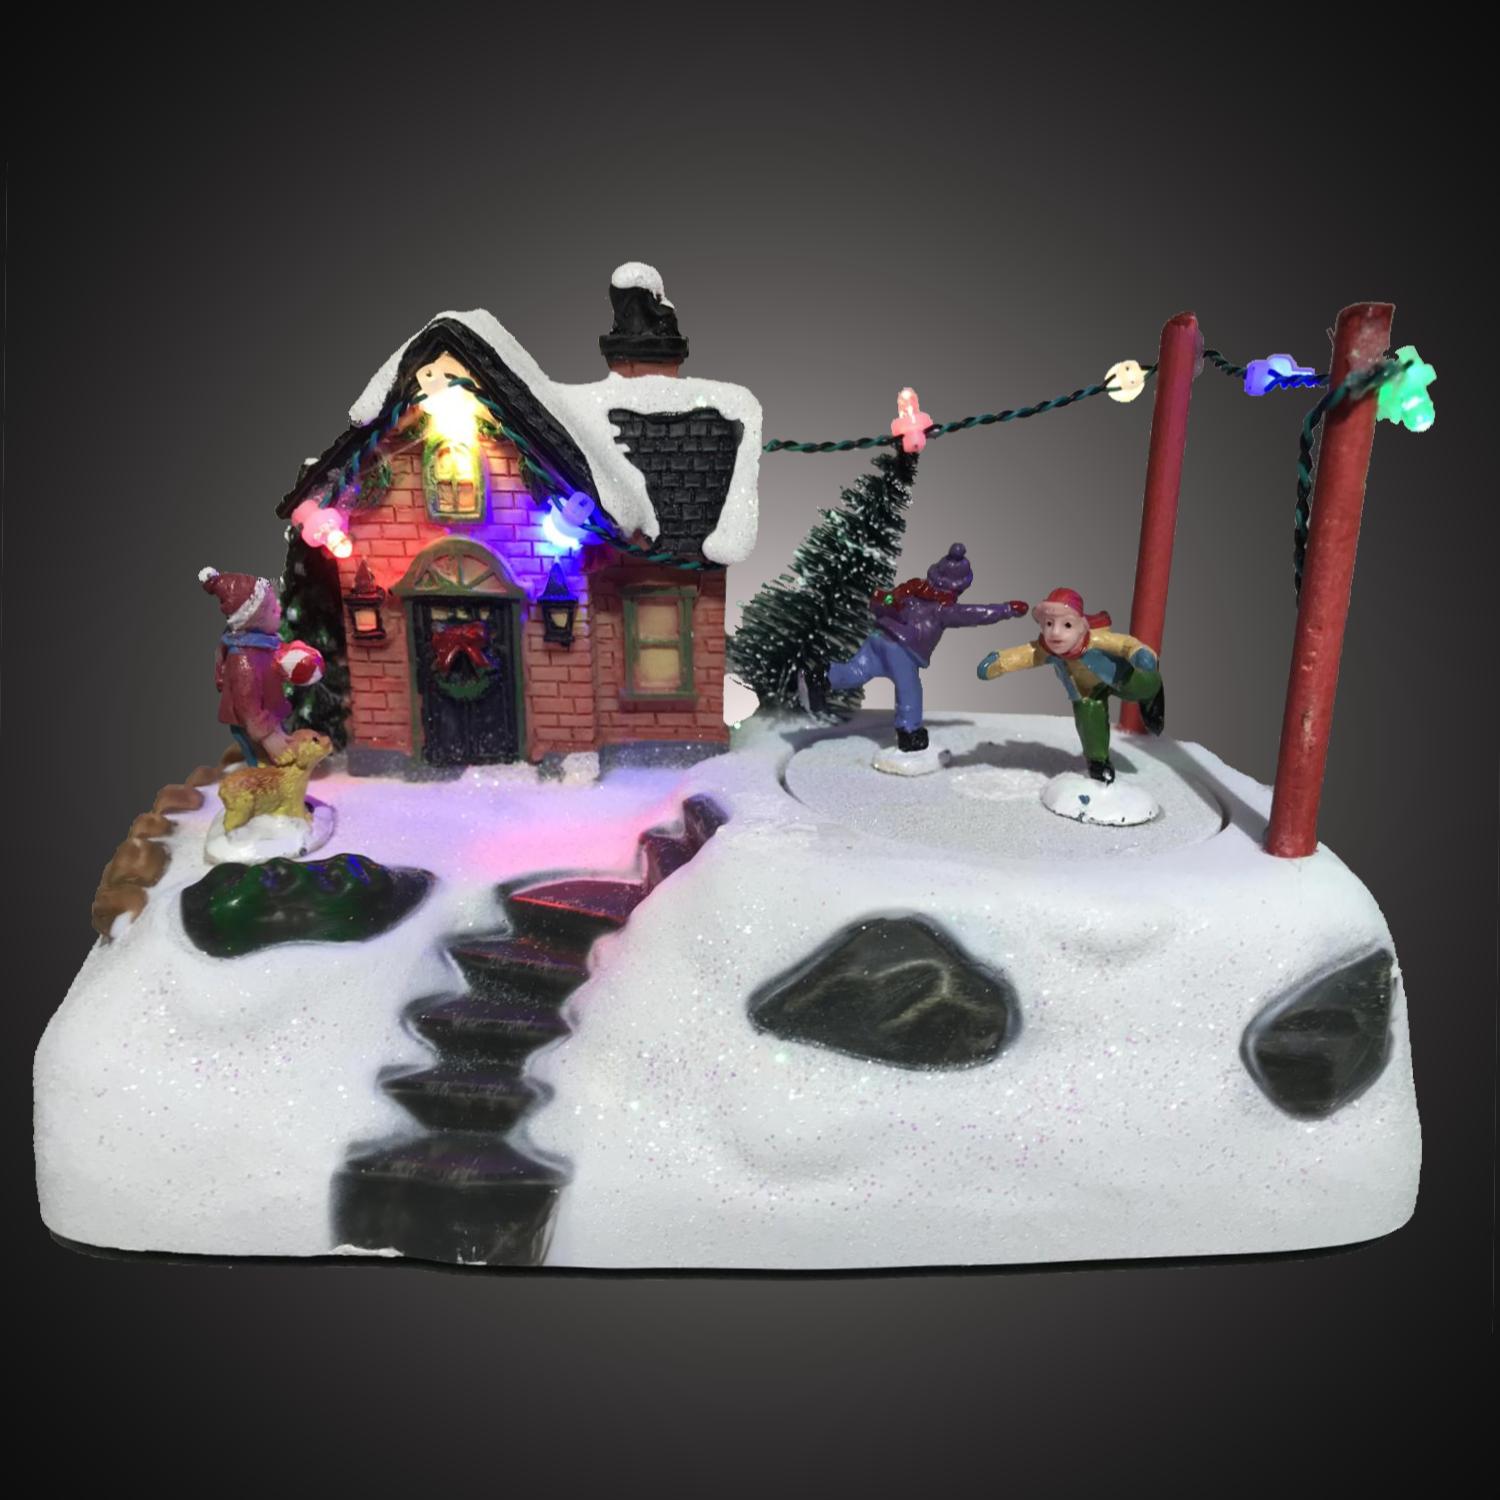 Kersthuisje - led kerstverlichting binnen - 7 lampjes - 10 x 18 x 12 cm - multicolor - 3x AA